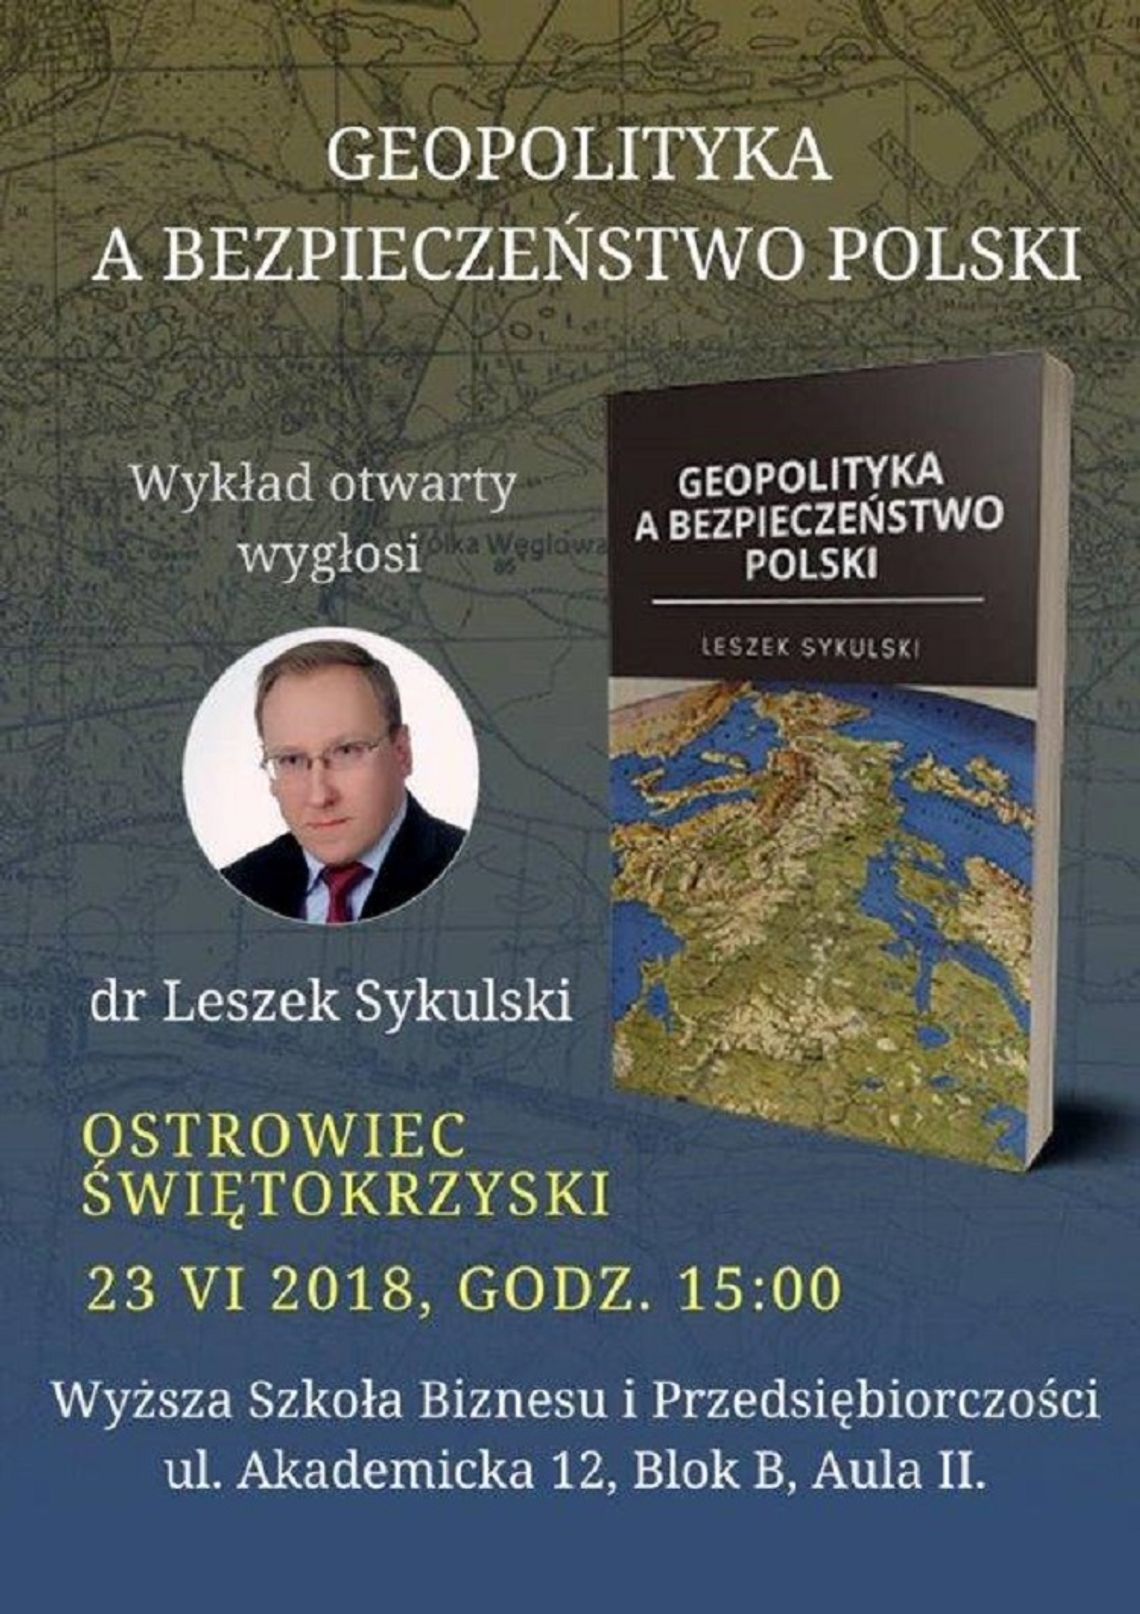  WSBiP zaprasza na wykład dr Leszka Sykulskiego